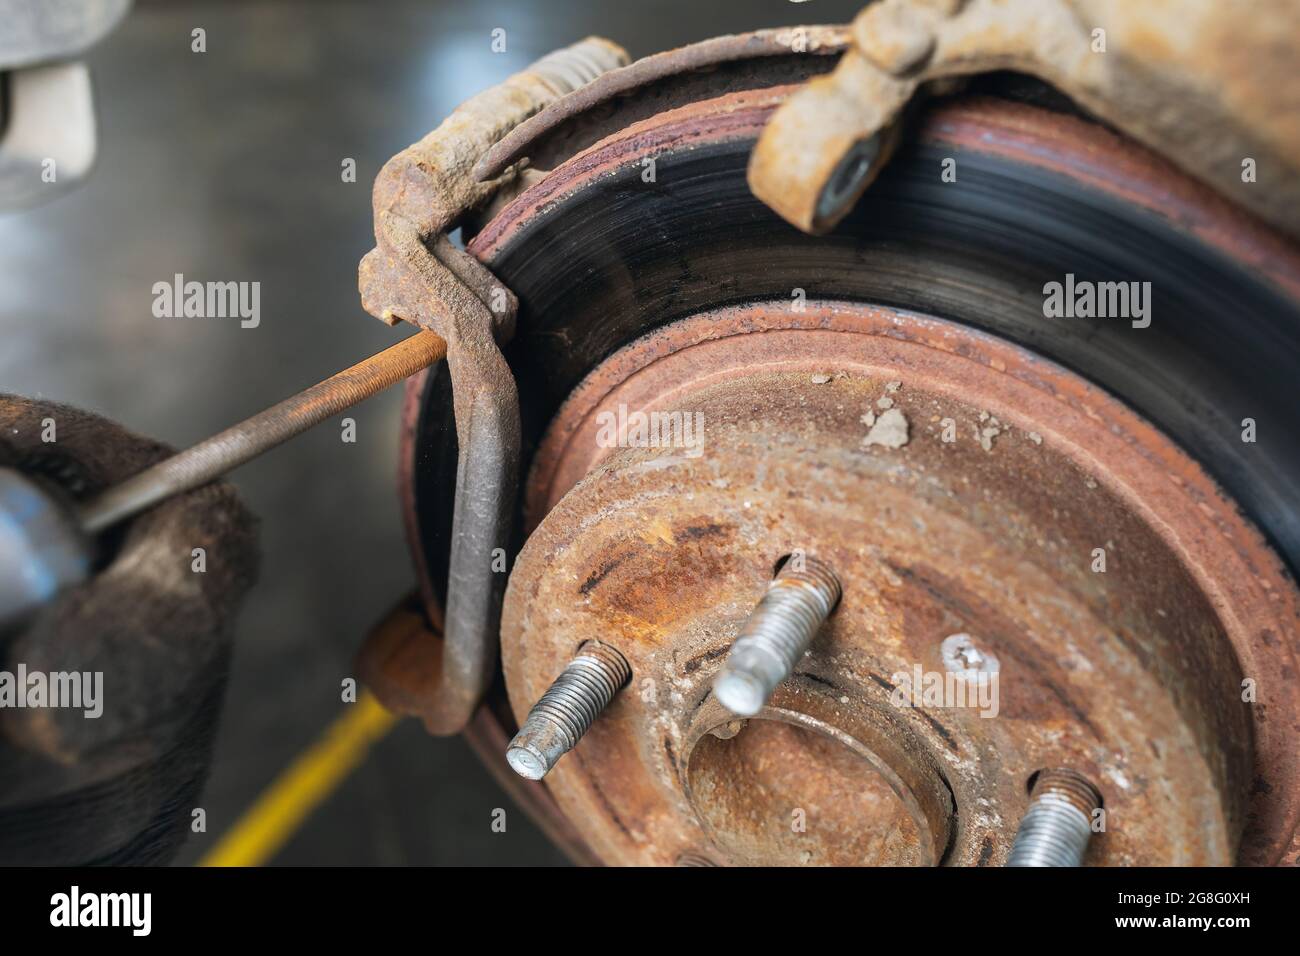 Ein Automechaniker schleift Rost an den Bremsscheiben ab, bevor er die  Bremsbeläge aus nächster Nähe auswechselt Stockfotografie - Alamy